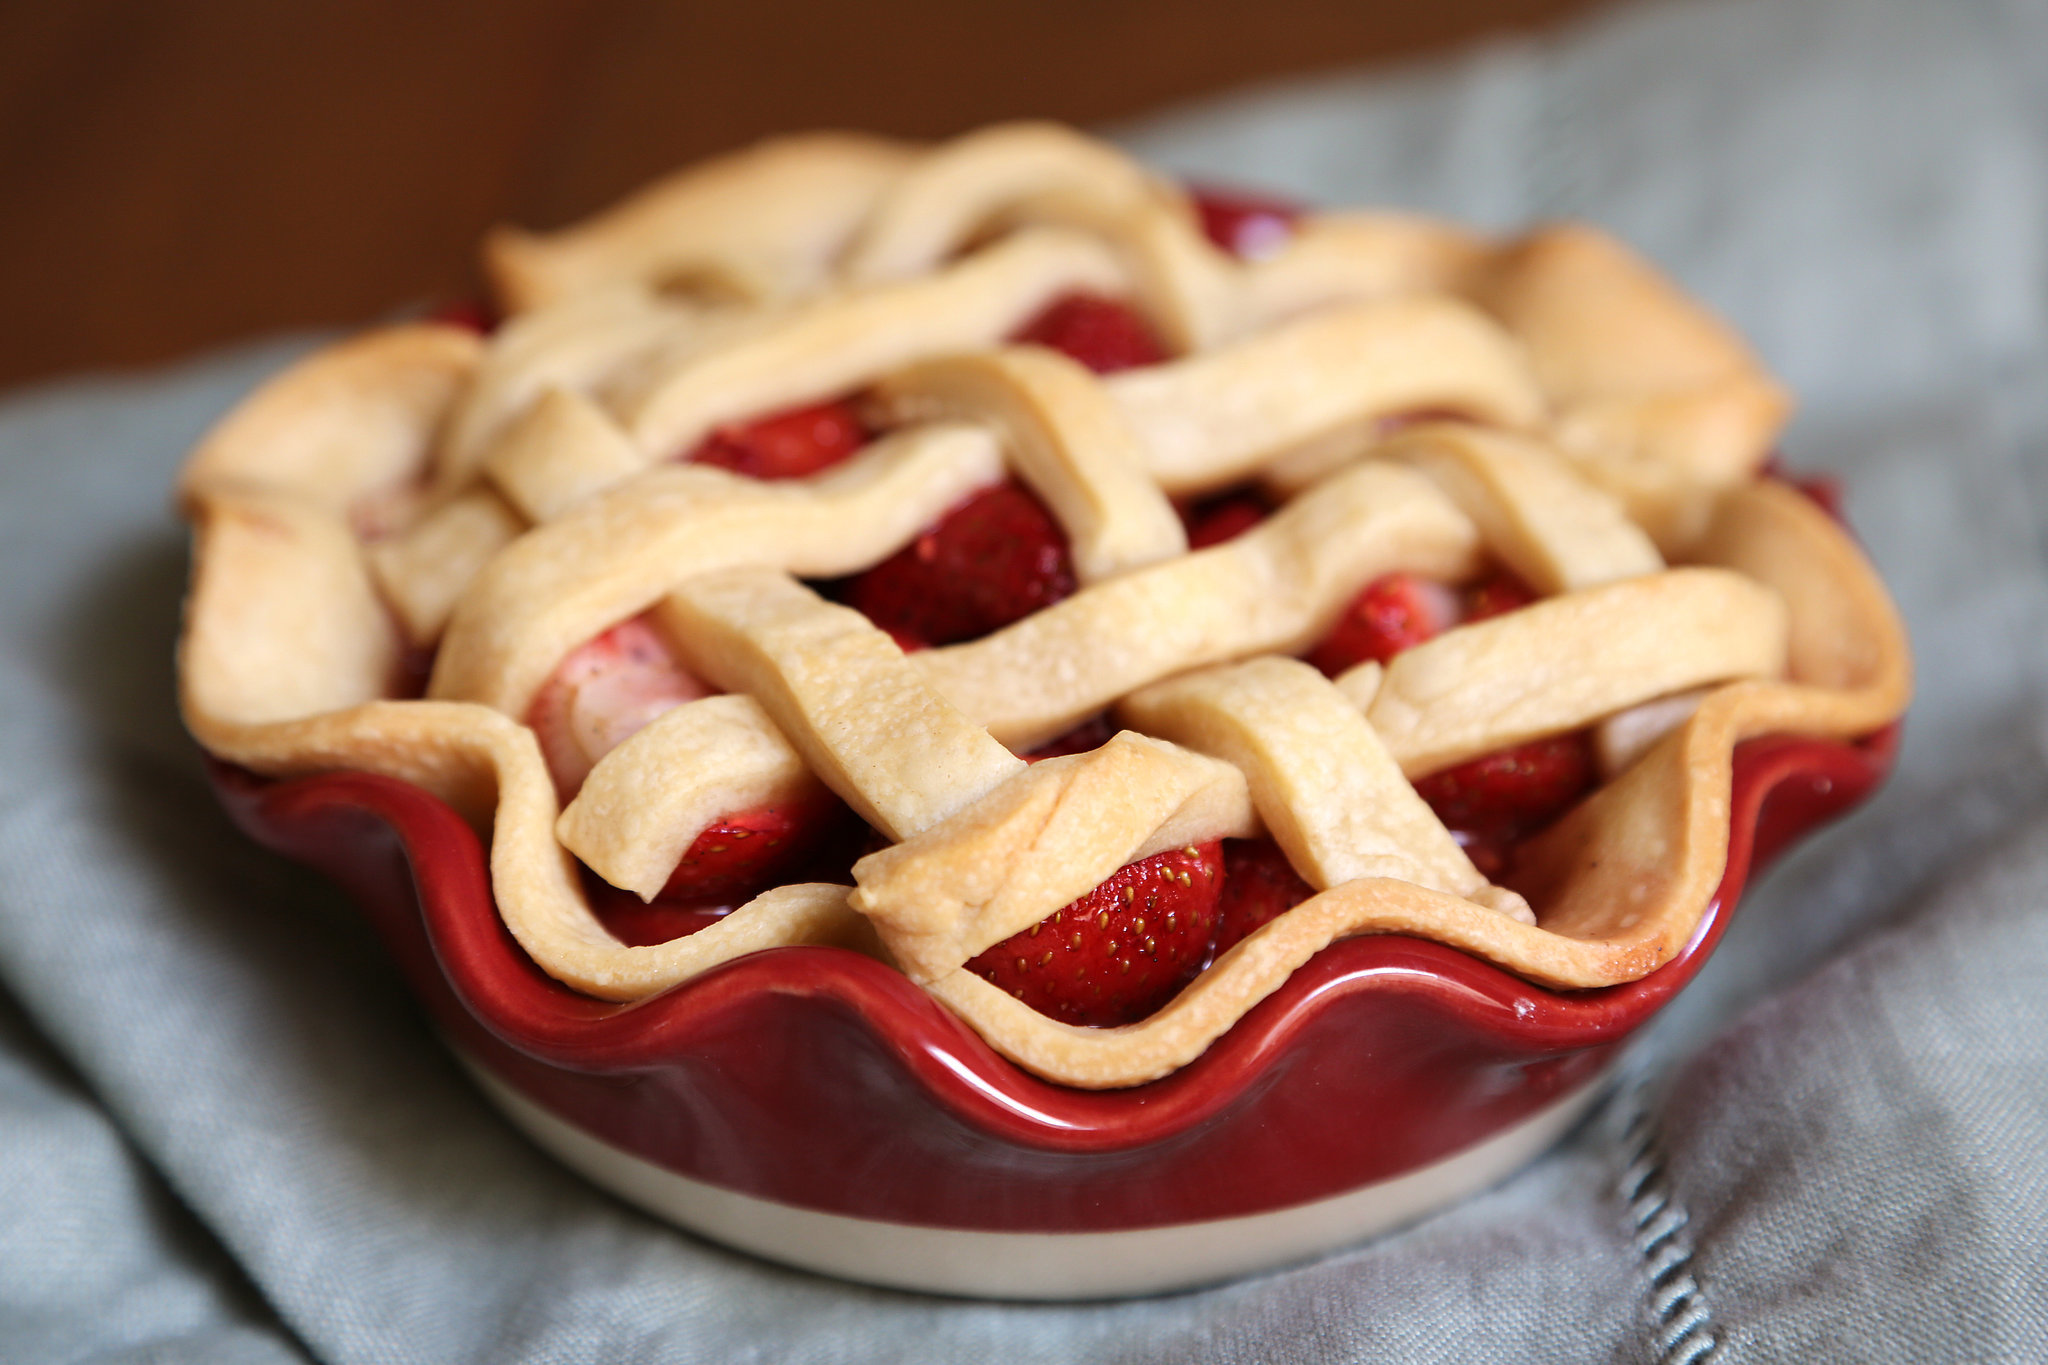 Strawberry Raspberry Pie Recipe